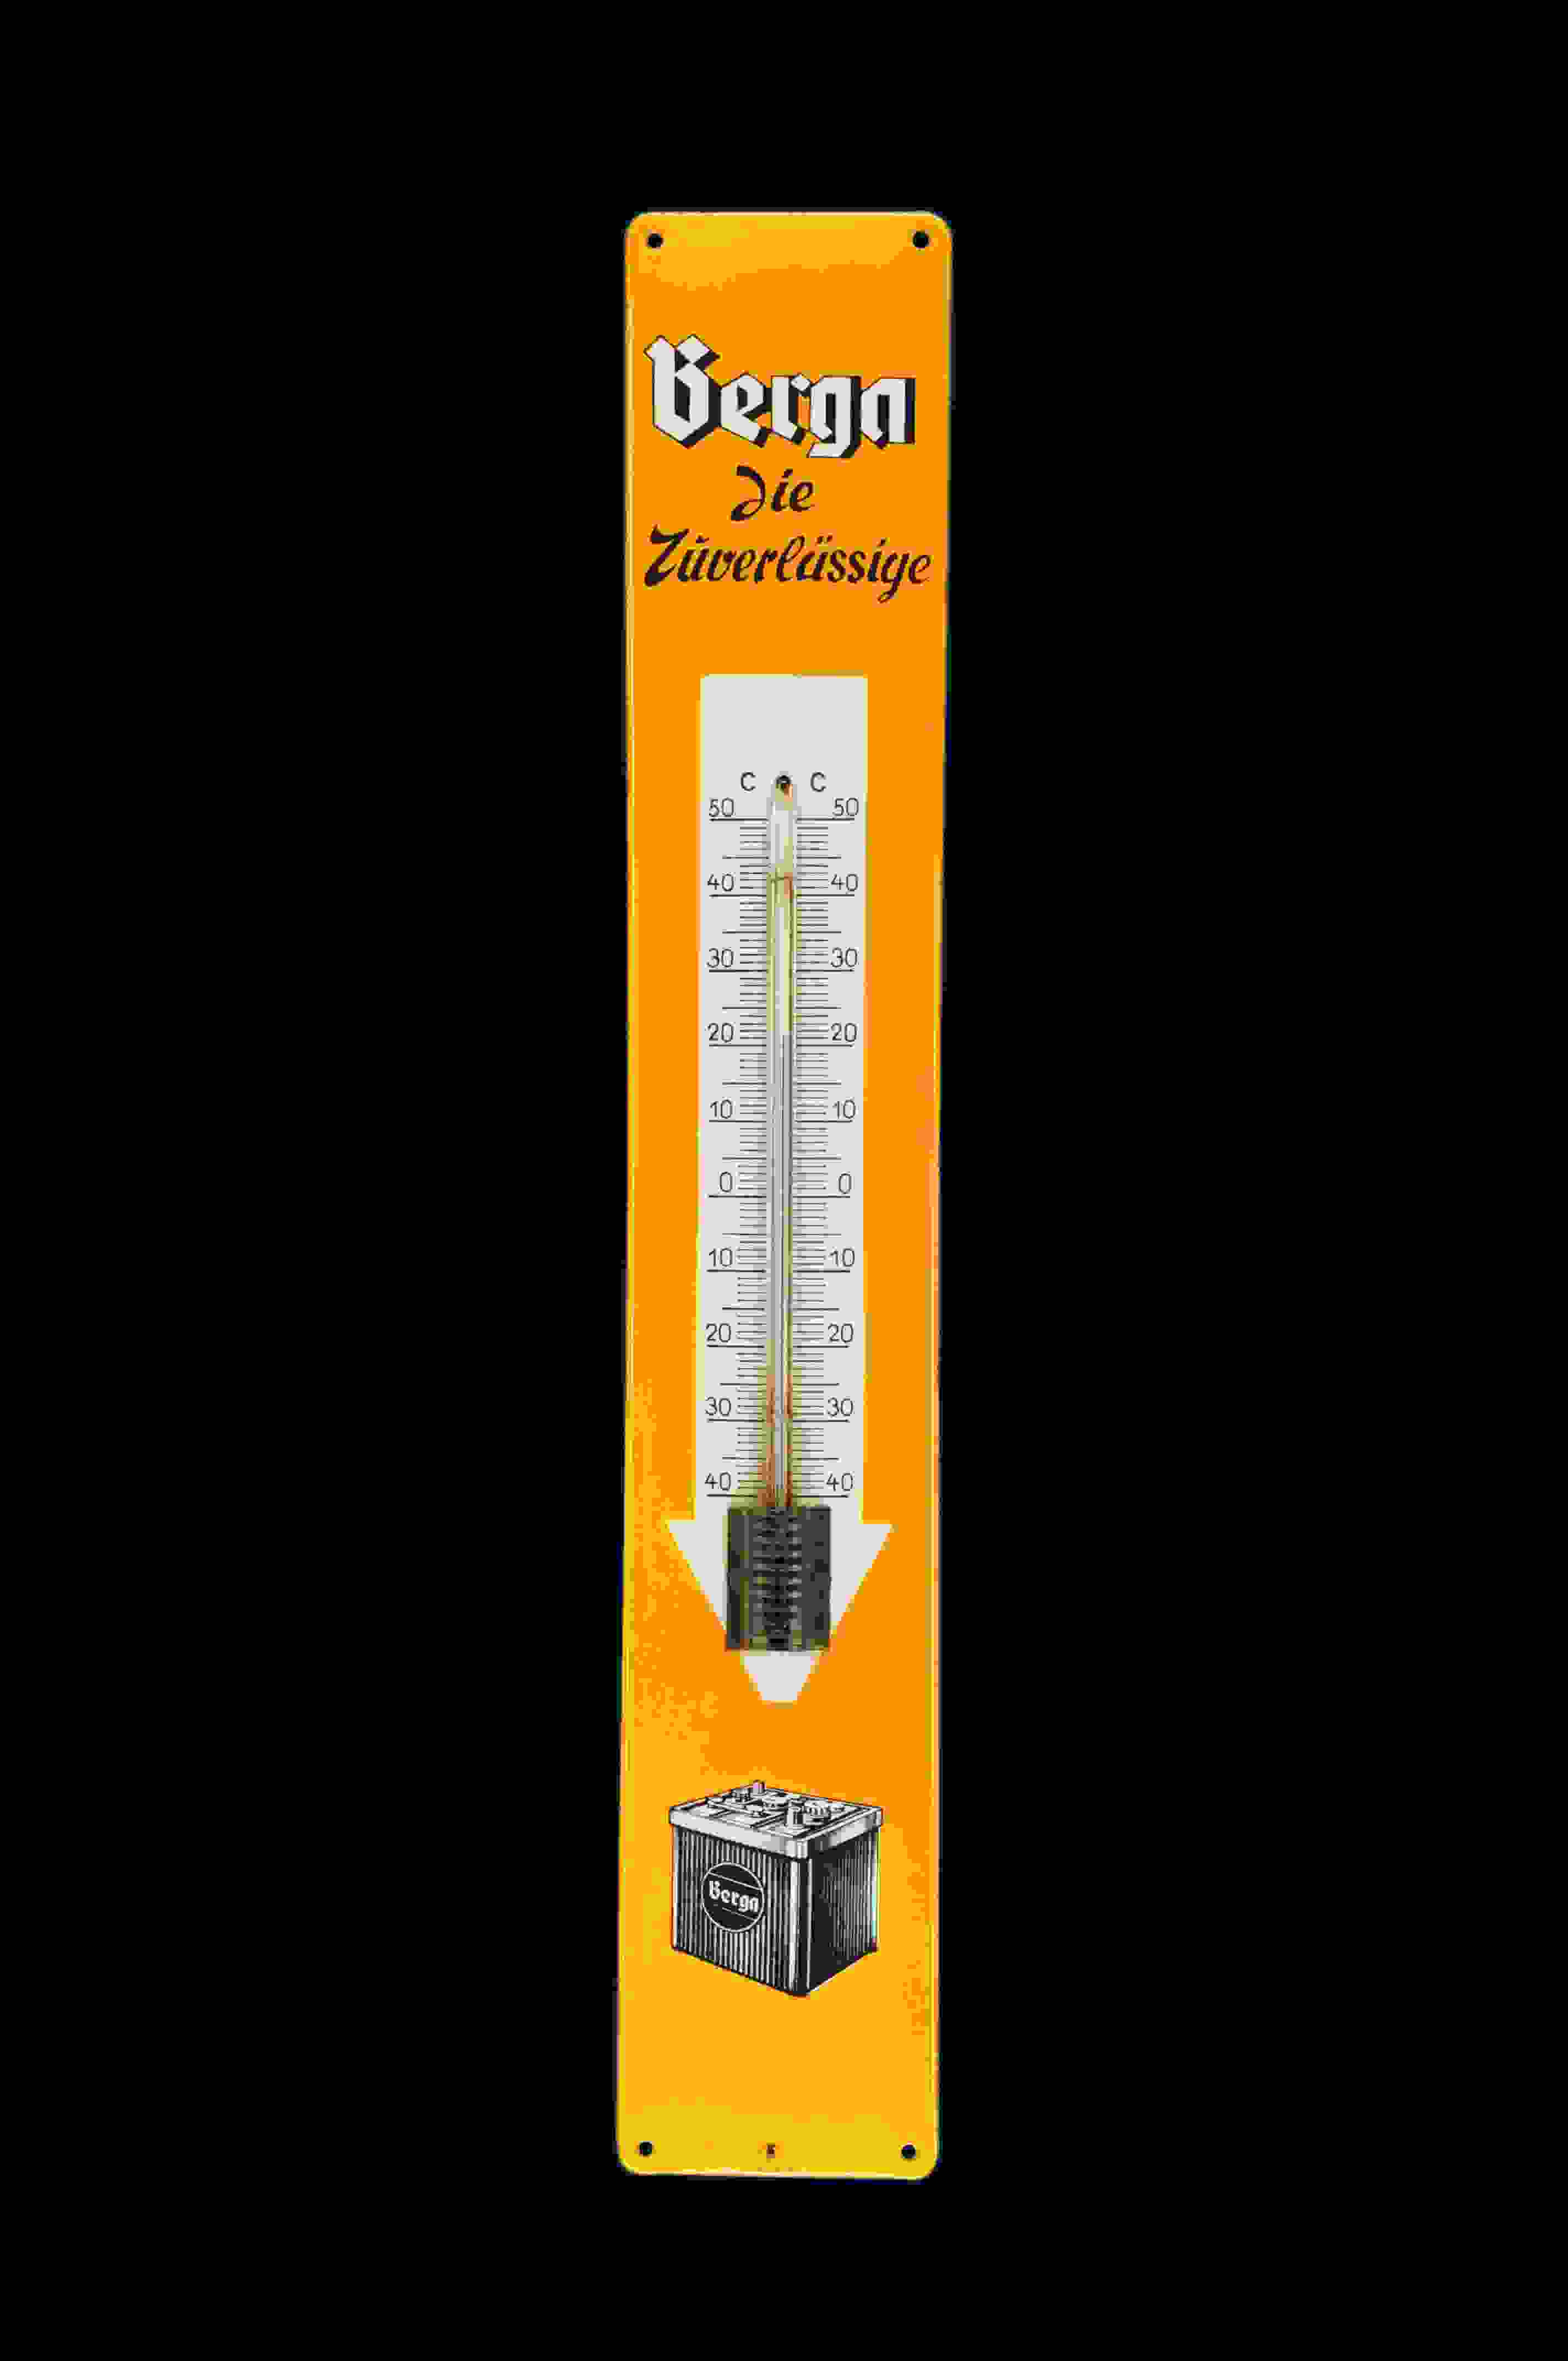 Berga die Zuverlässige Thermometer 